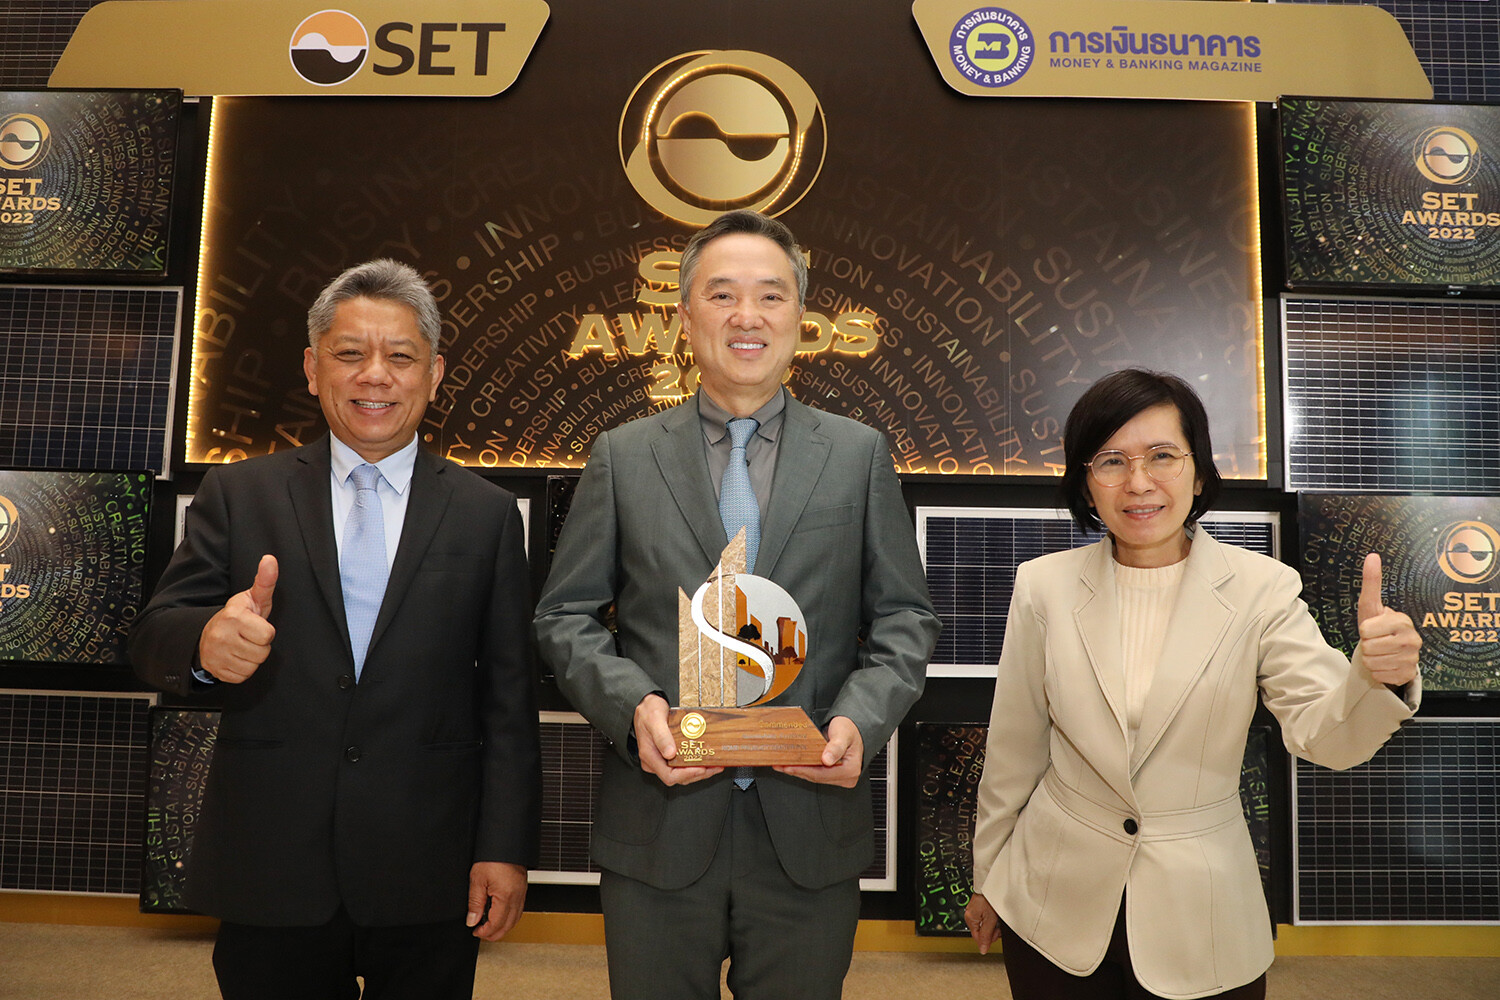 โฮมโปร คว้ารางวัลด้านความยั่งยืน Commended Sustainability Awards ในงานประกาศผลรางวัล SET Awards 2022 จากตลาดหลักทรัพย์แห่งประเทศไทย